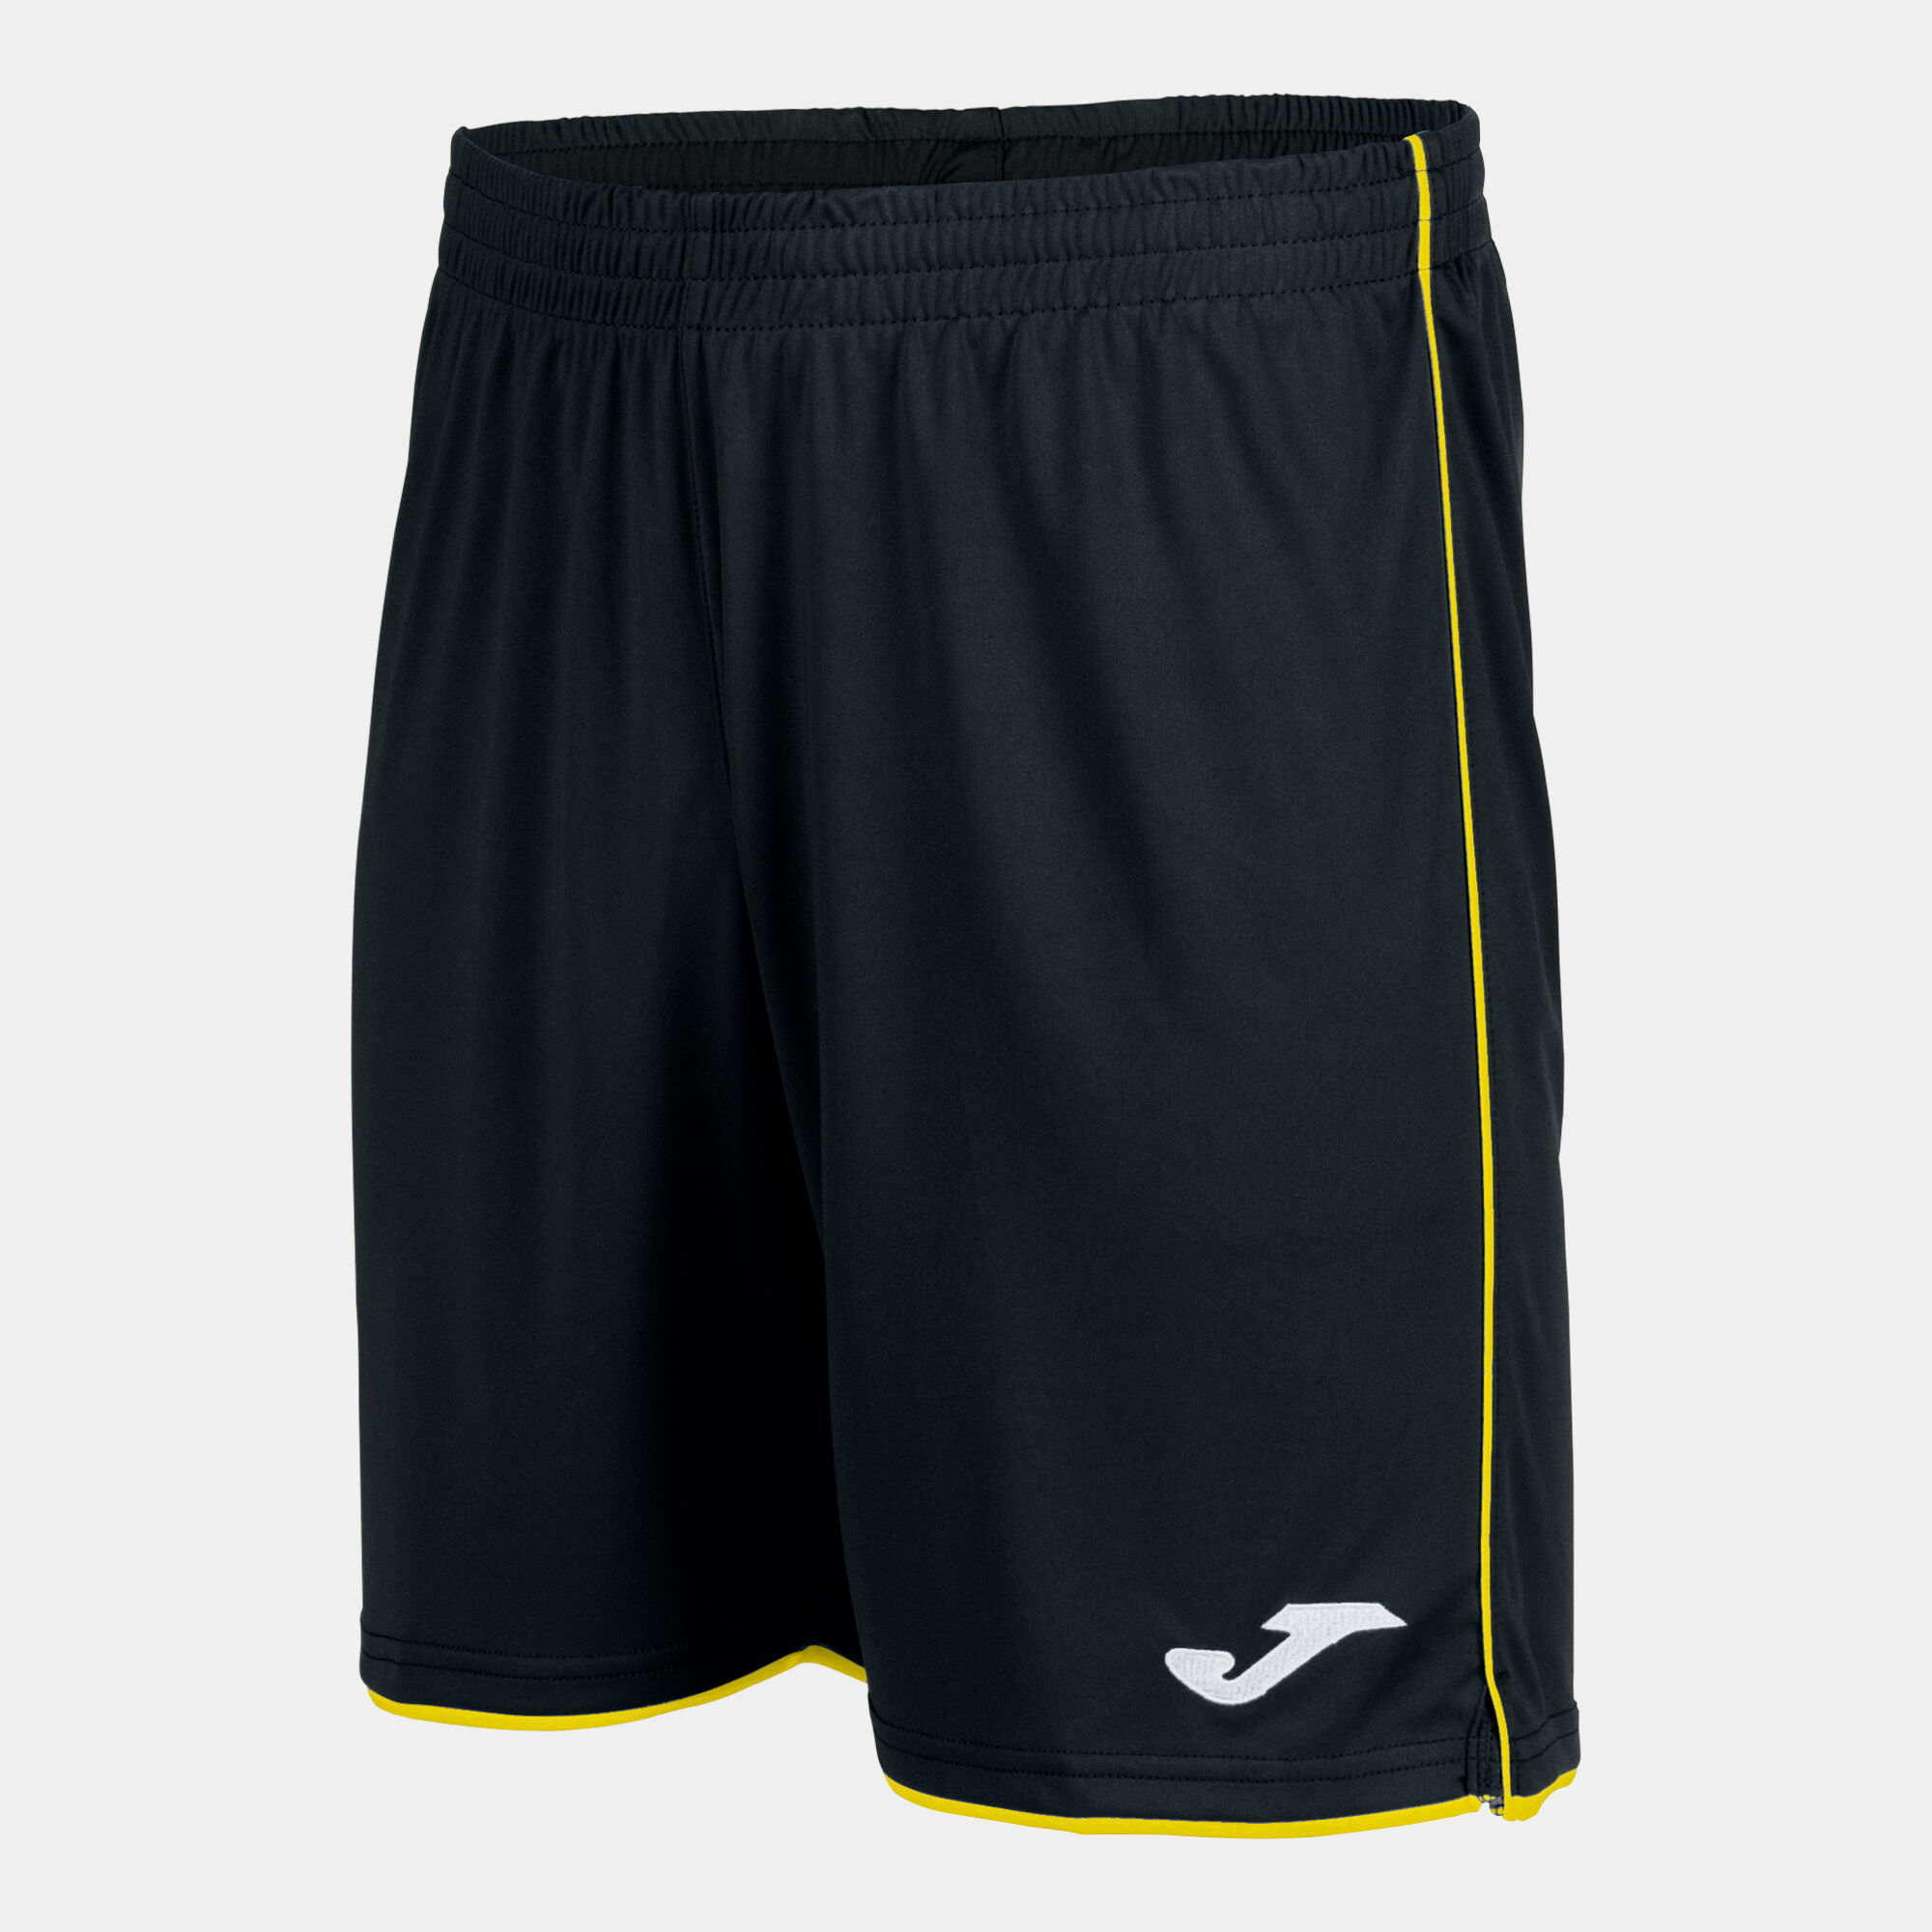 Shorts man Liga black yellow